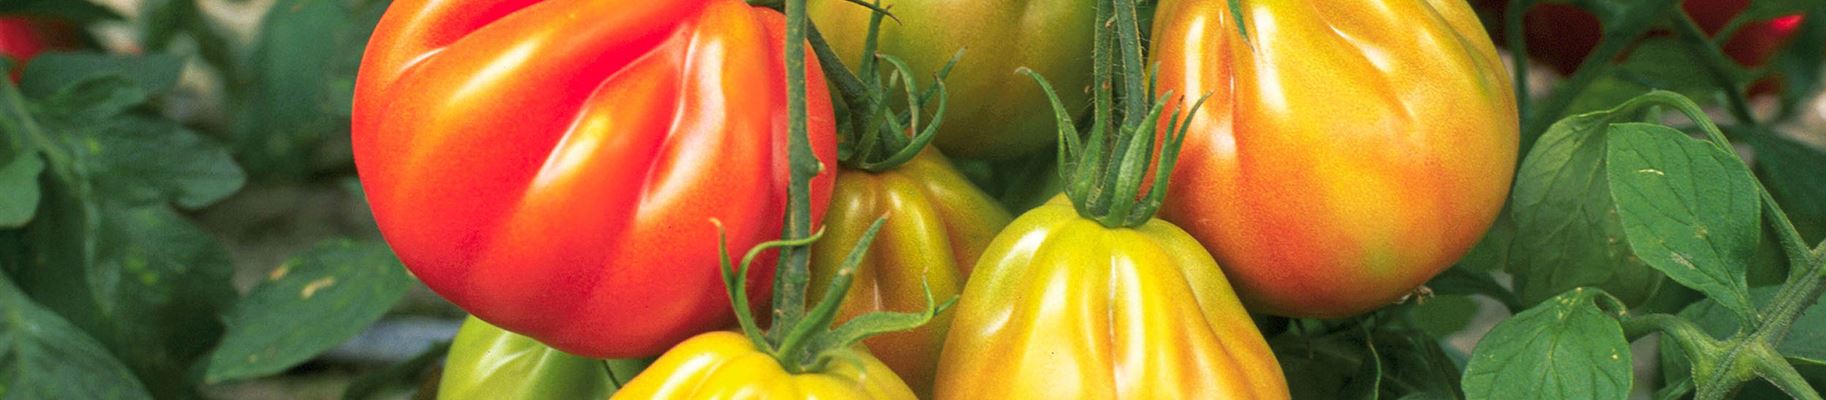 Italienische Tomaten Reif und Überreif.jpg